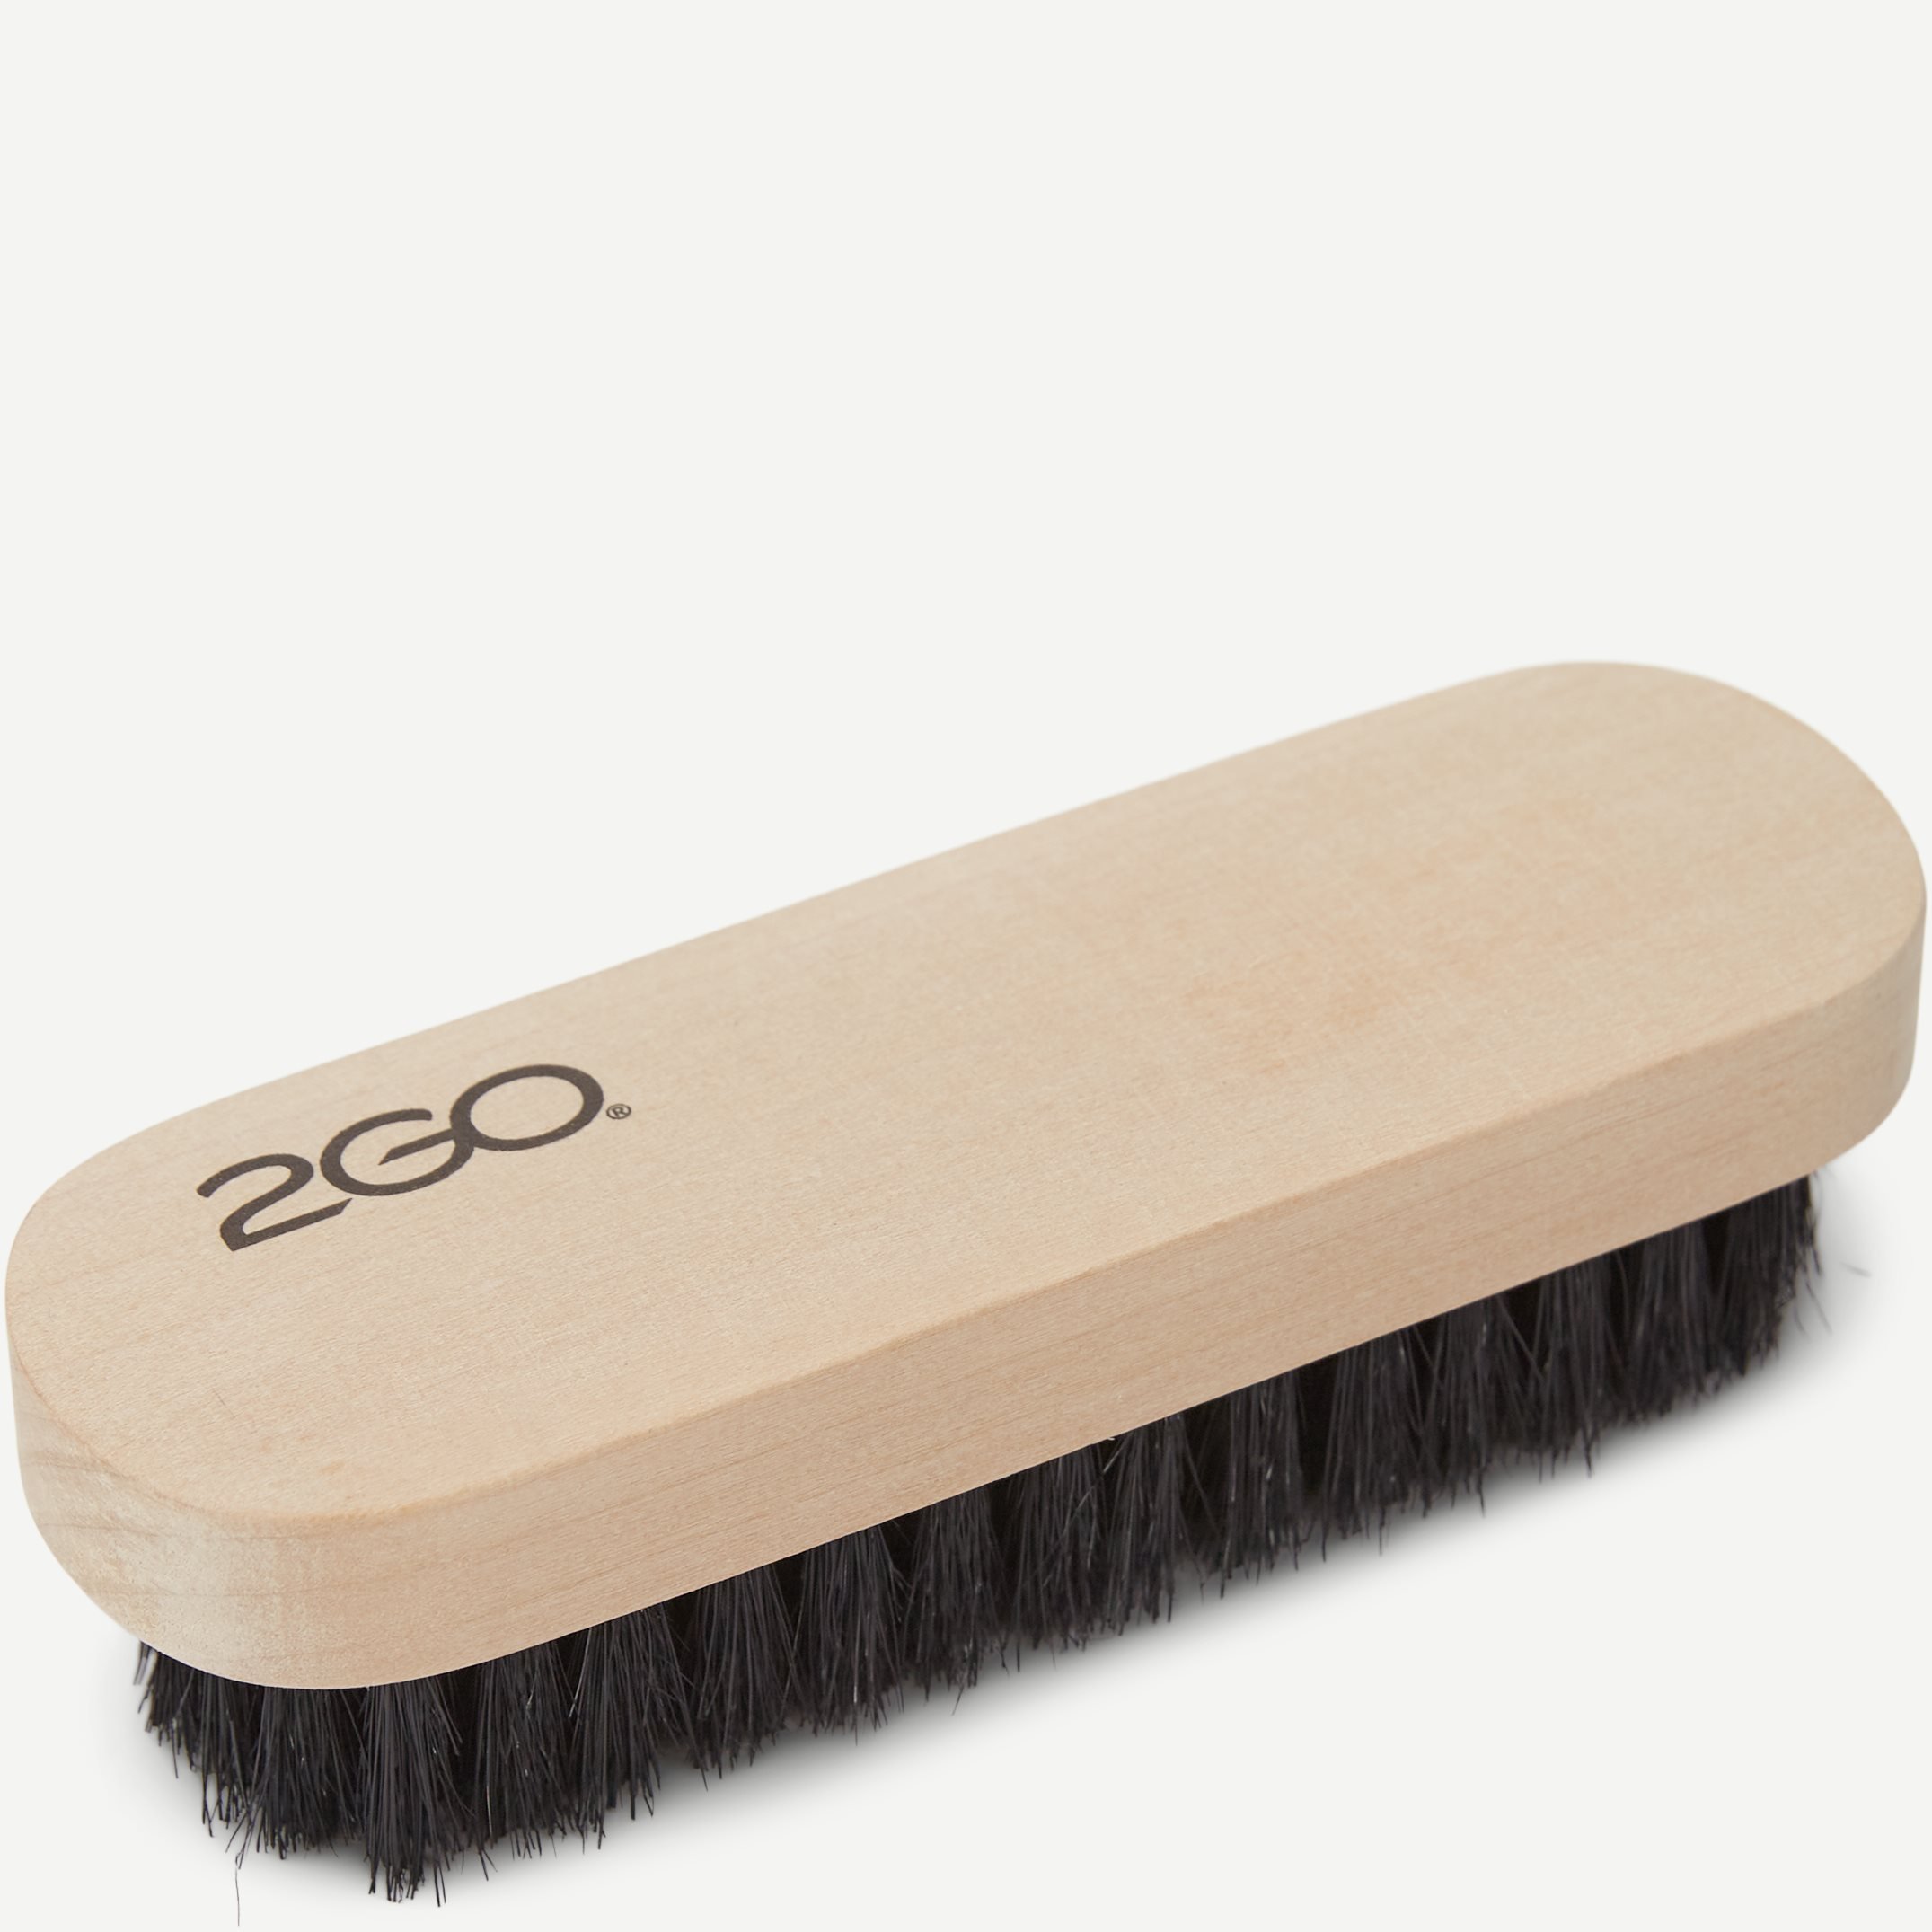 2GO Shoe Brush Small - Accessories - White